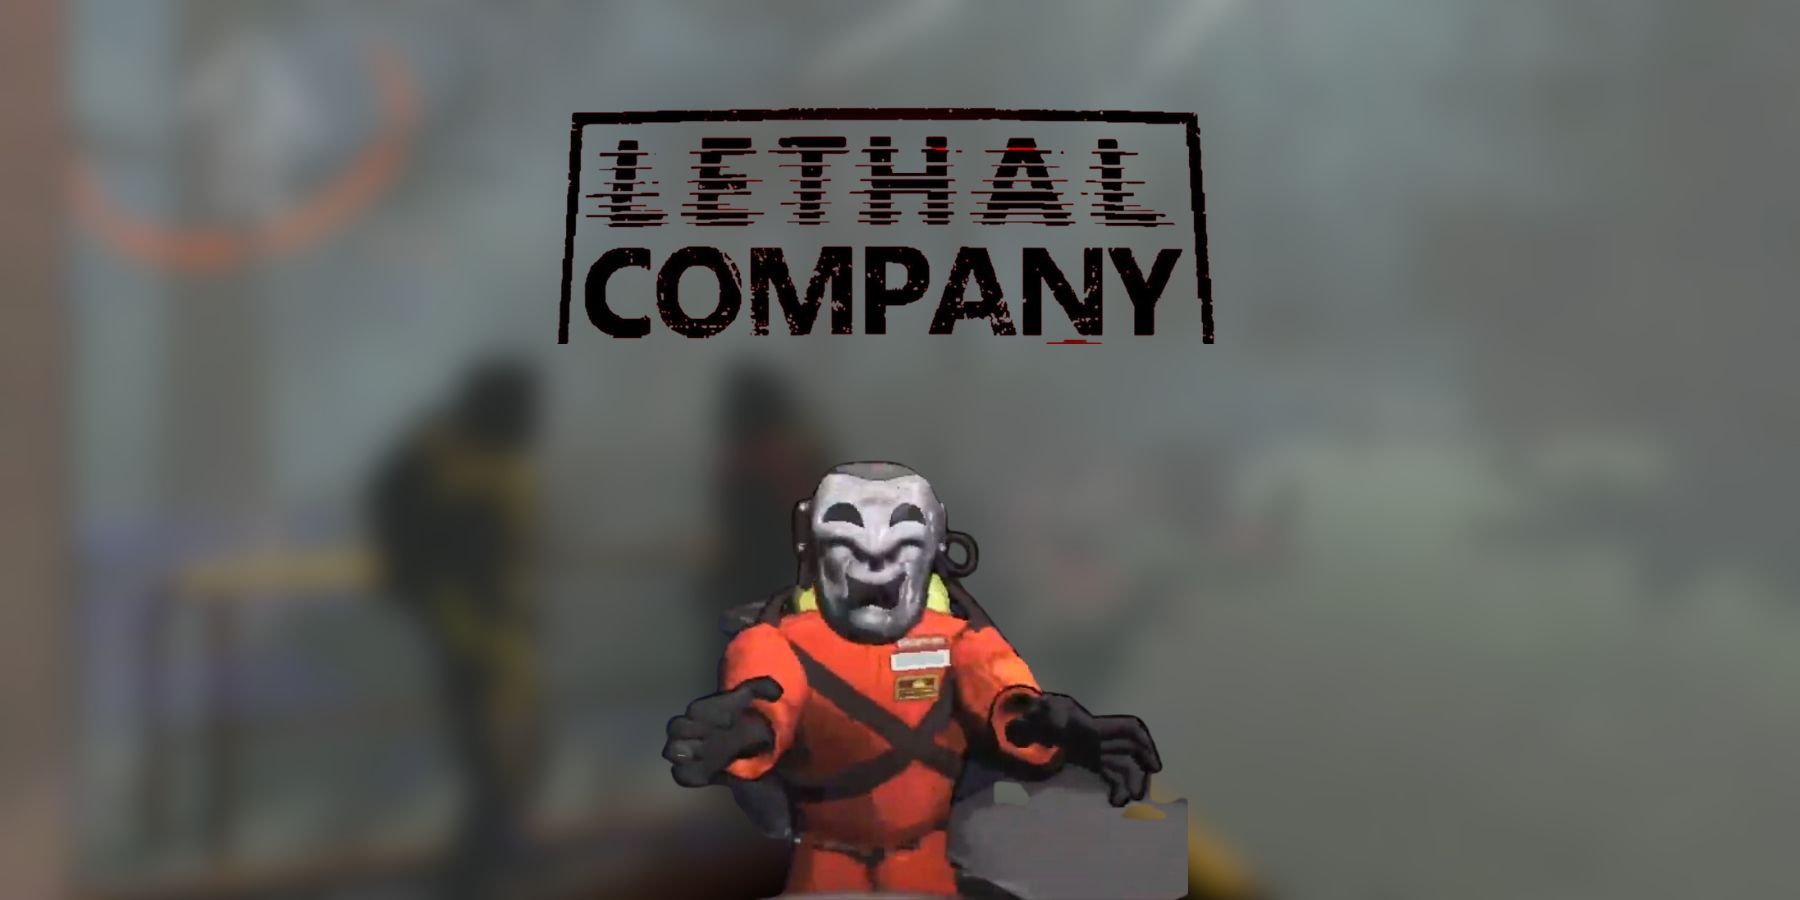 Подробнее о статье Lethal Company: что делают маски трагедий и комедий